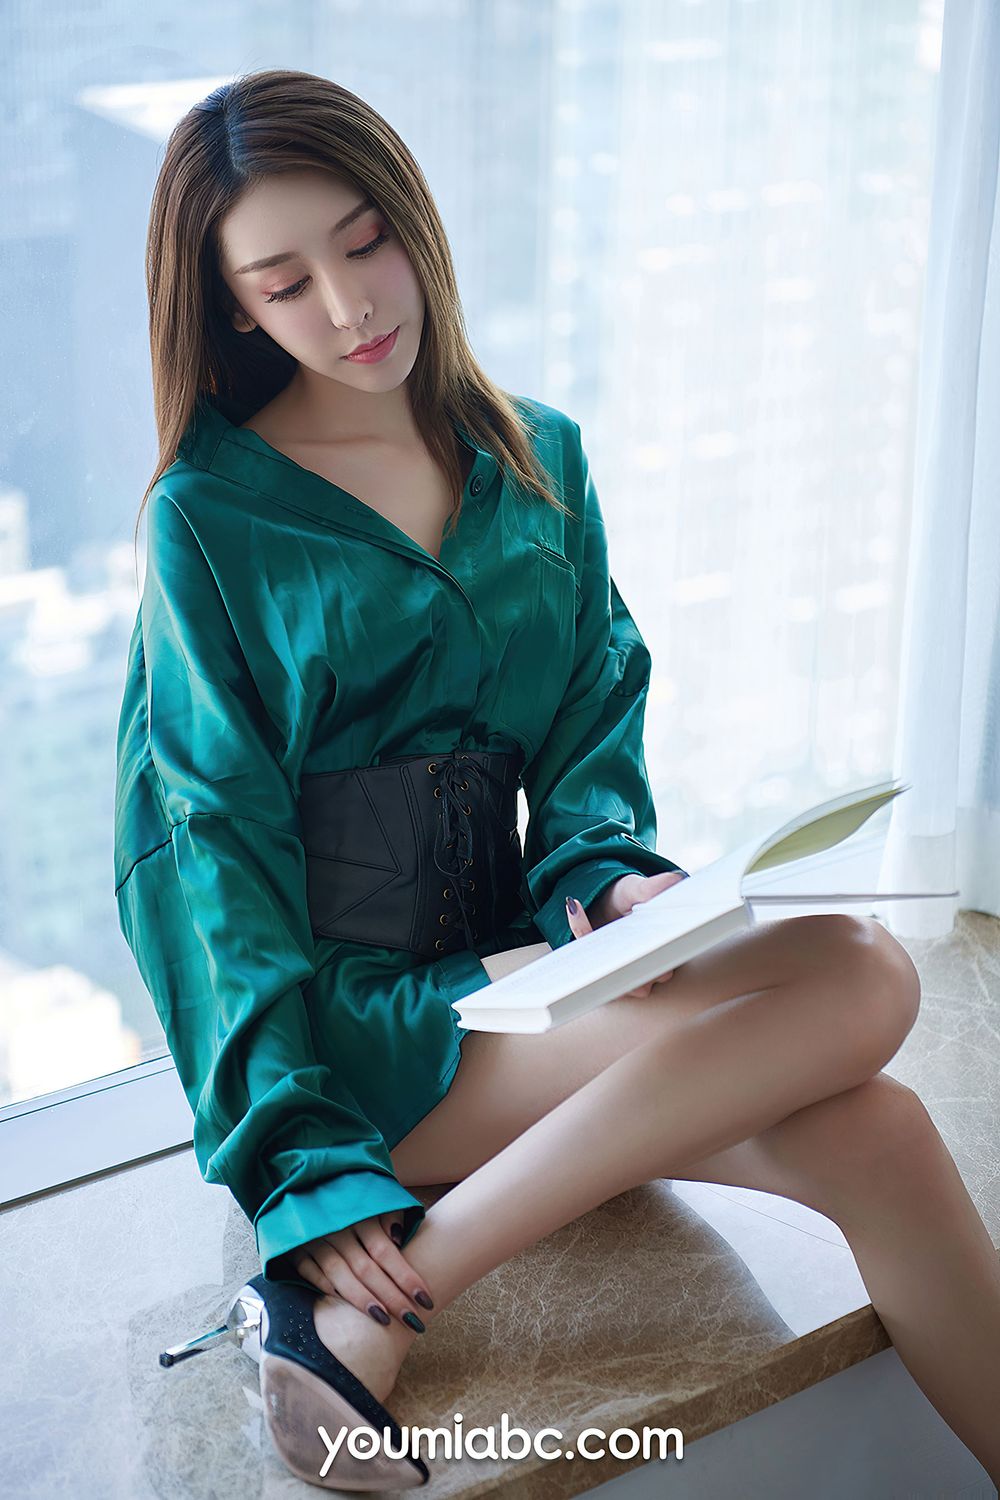 美女模特然熙 - 绿色服饰开春之约主题性感写真